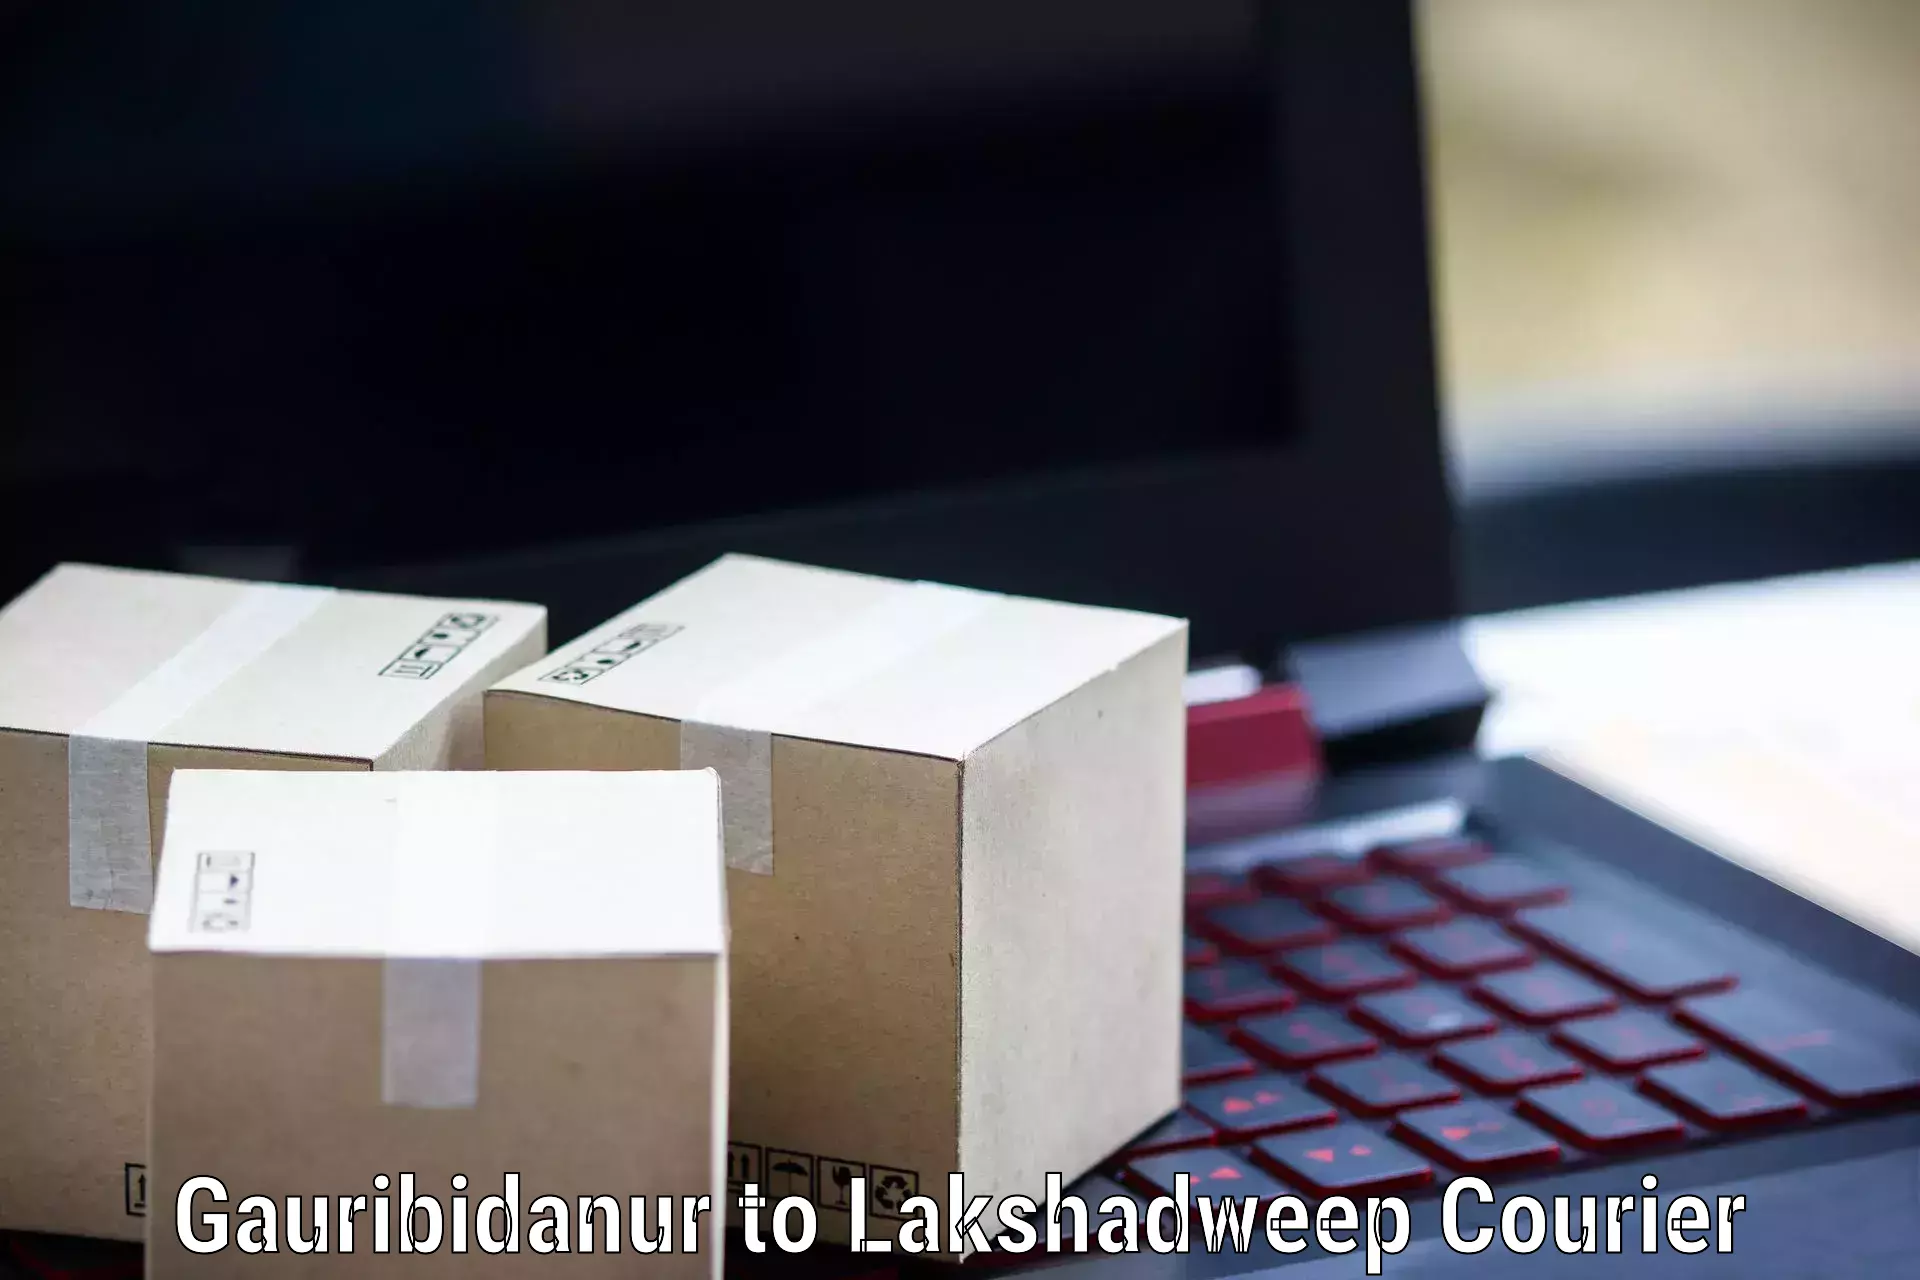 International courier networks Gauribidanur to Lakshadweep